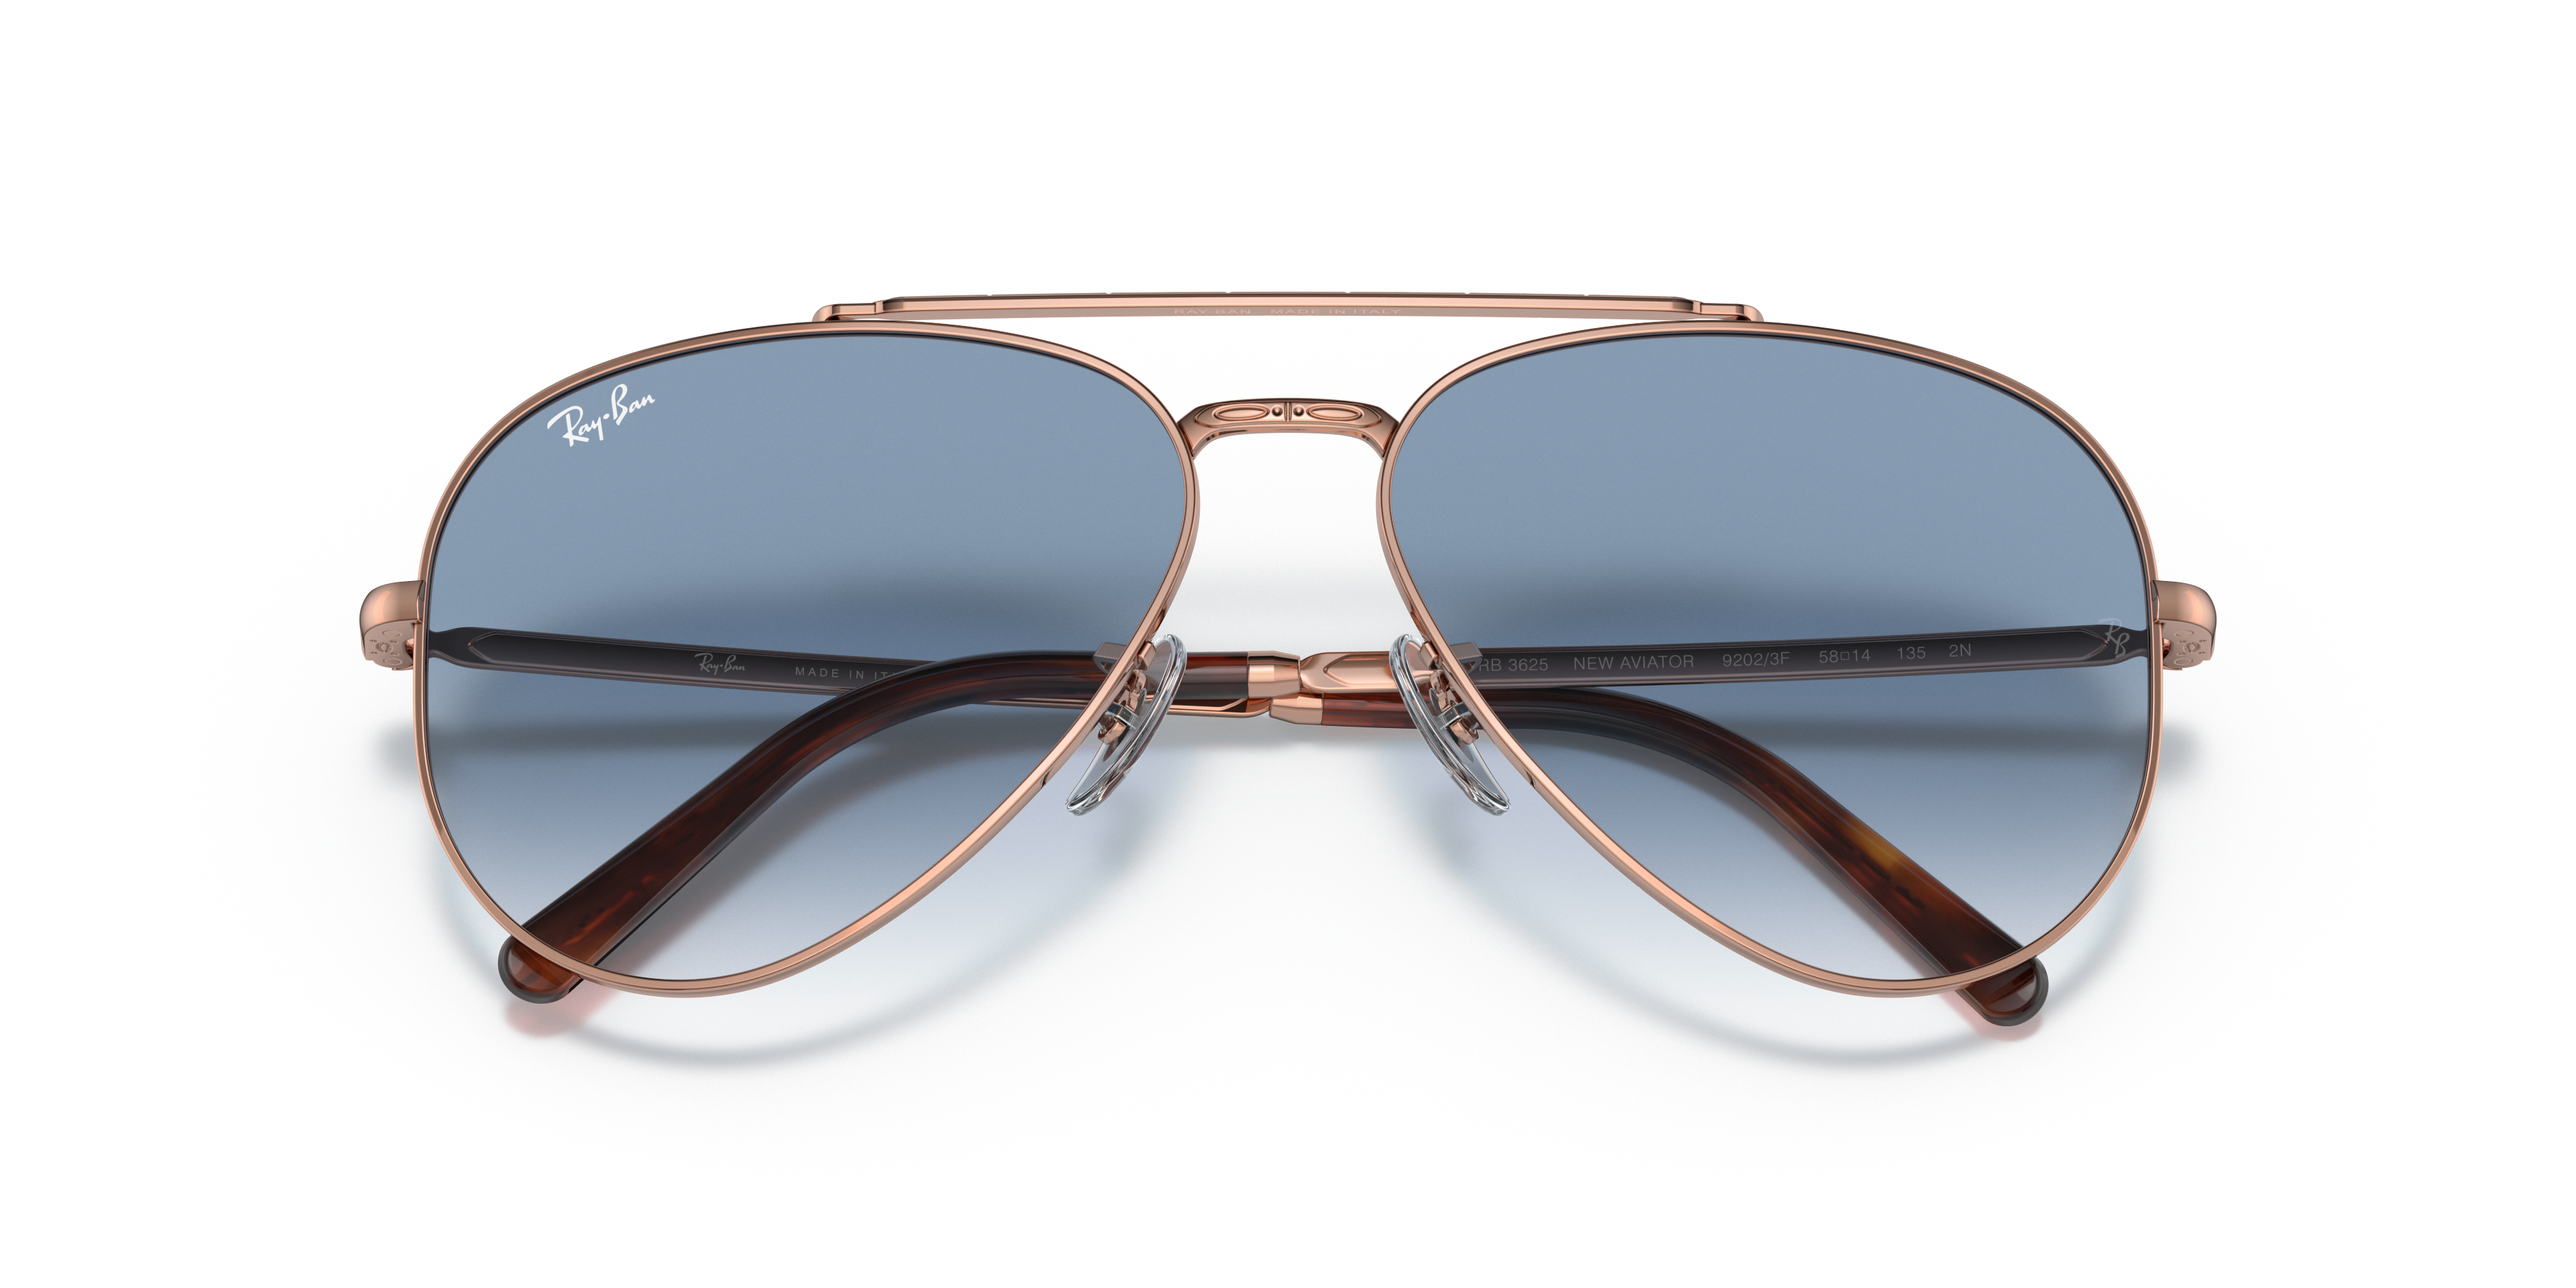 Buy Ray-Ban New Aviator Sunglasses Online.